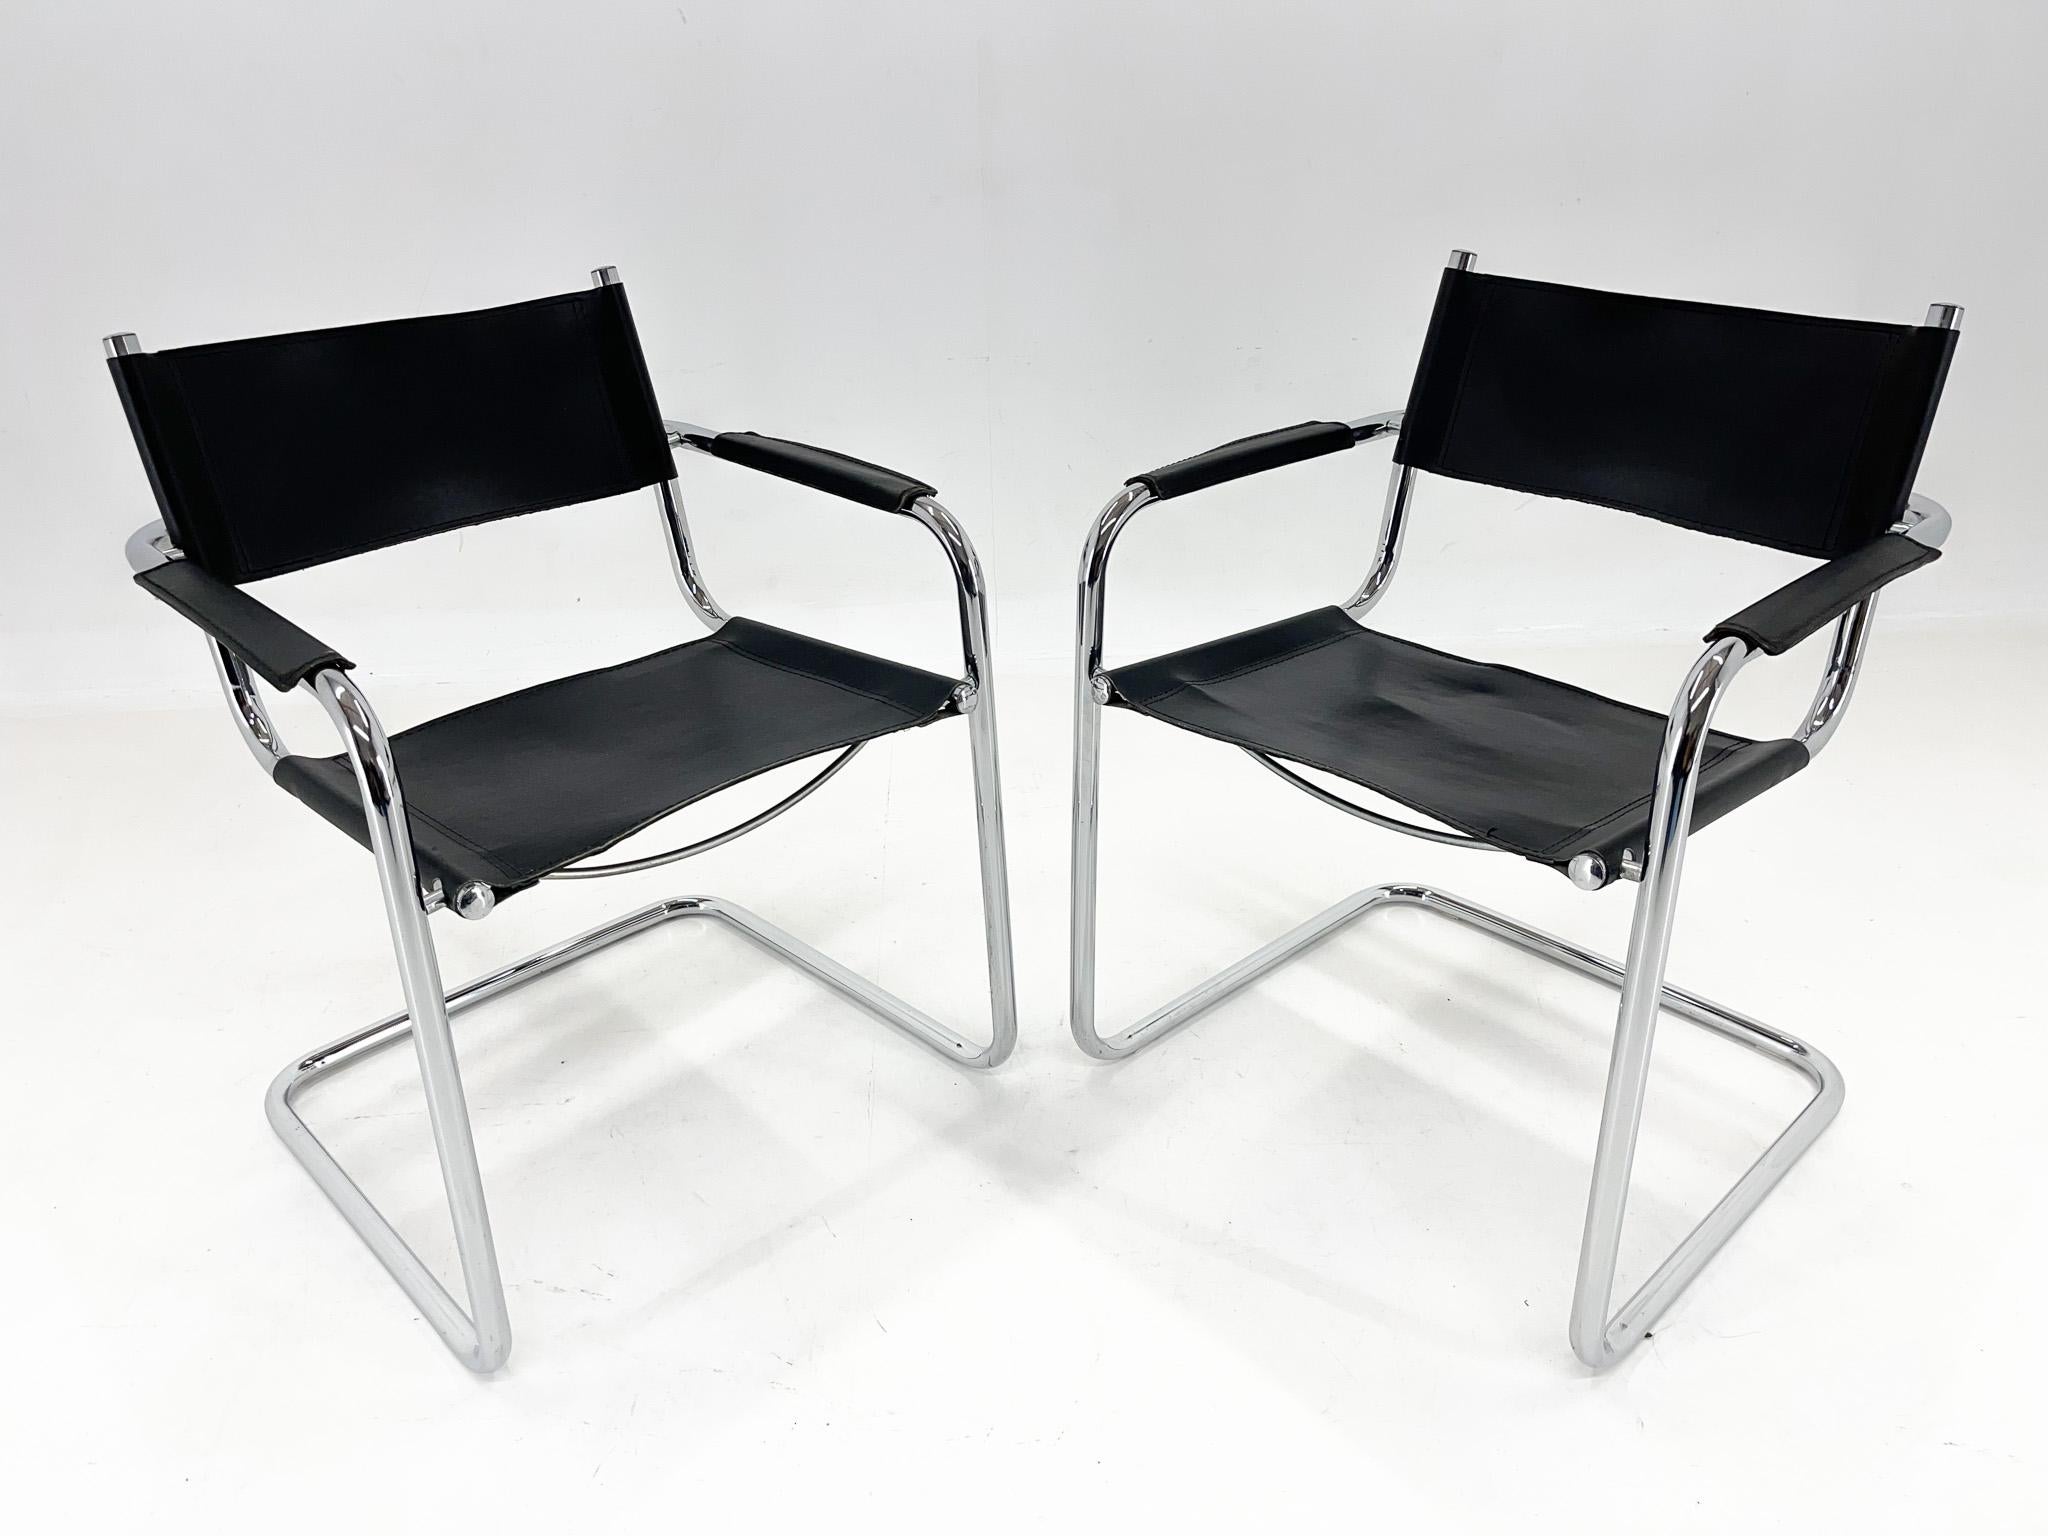 Zwei Stühle aus Leder und Chrom von Mart Stam. Der Chrom ist in sehr gutem Zustand. Das Leder hat einige Gebrauchsspuren. Alle Unvollkommenheiten sind auf den Fotos zu sehen. Der Sitz ist 47 cm hoch und die Armlehnen sind 63 cm hoch.